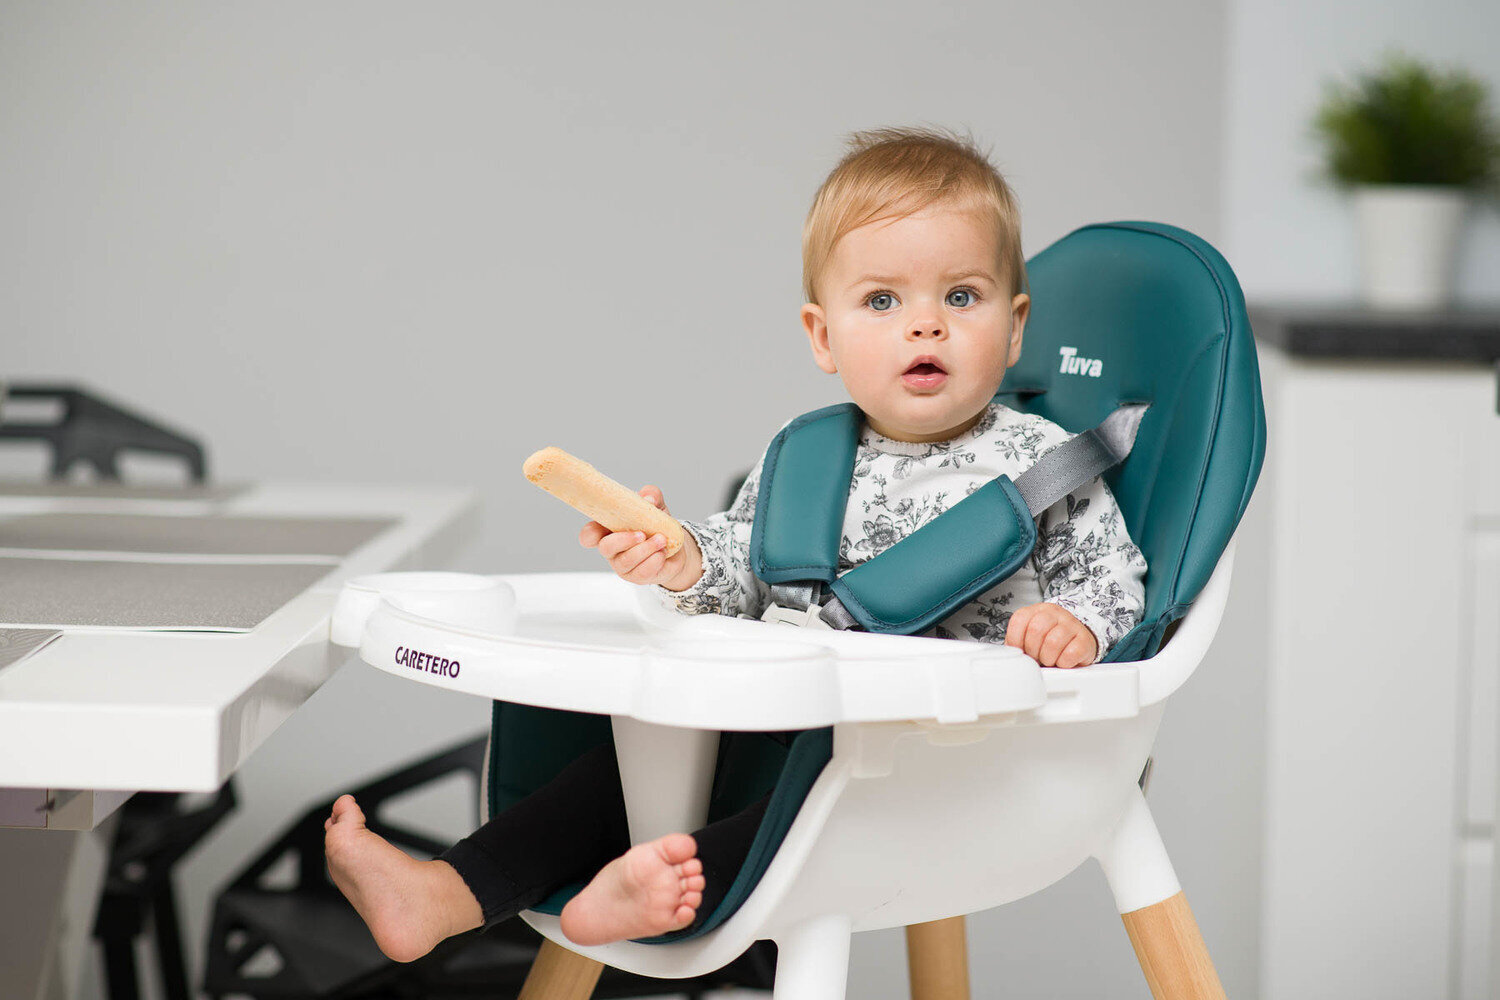 Maitinimo kėdutė kūdikiams Caretero Tuva 2 in 1, smėlio spalvos kaina ir informacija | Maitinimo kėdutės | pigu.lt